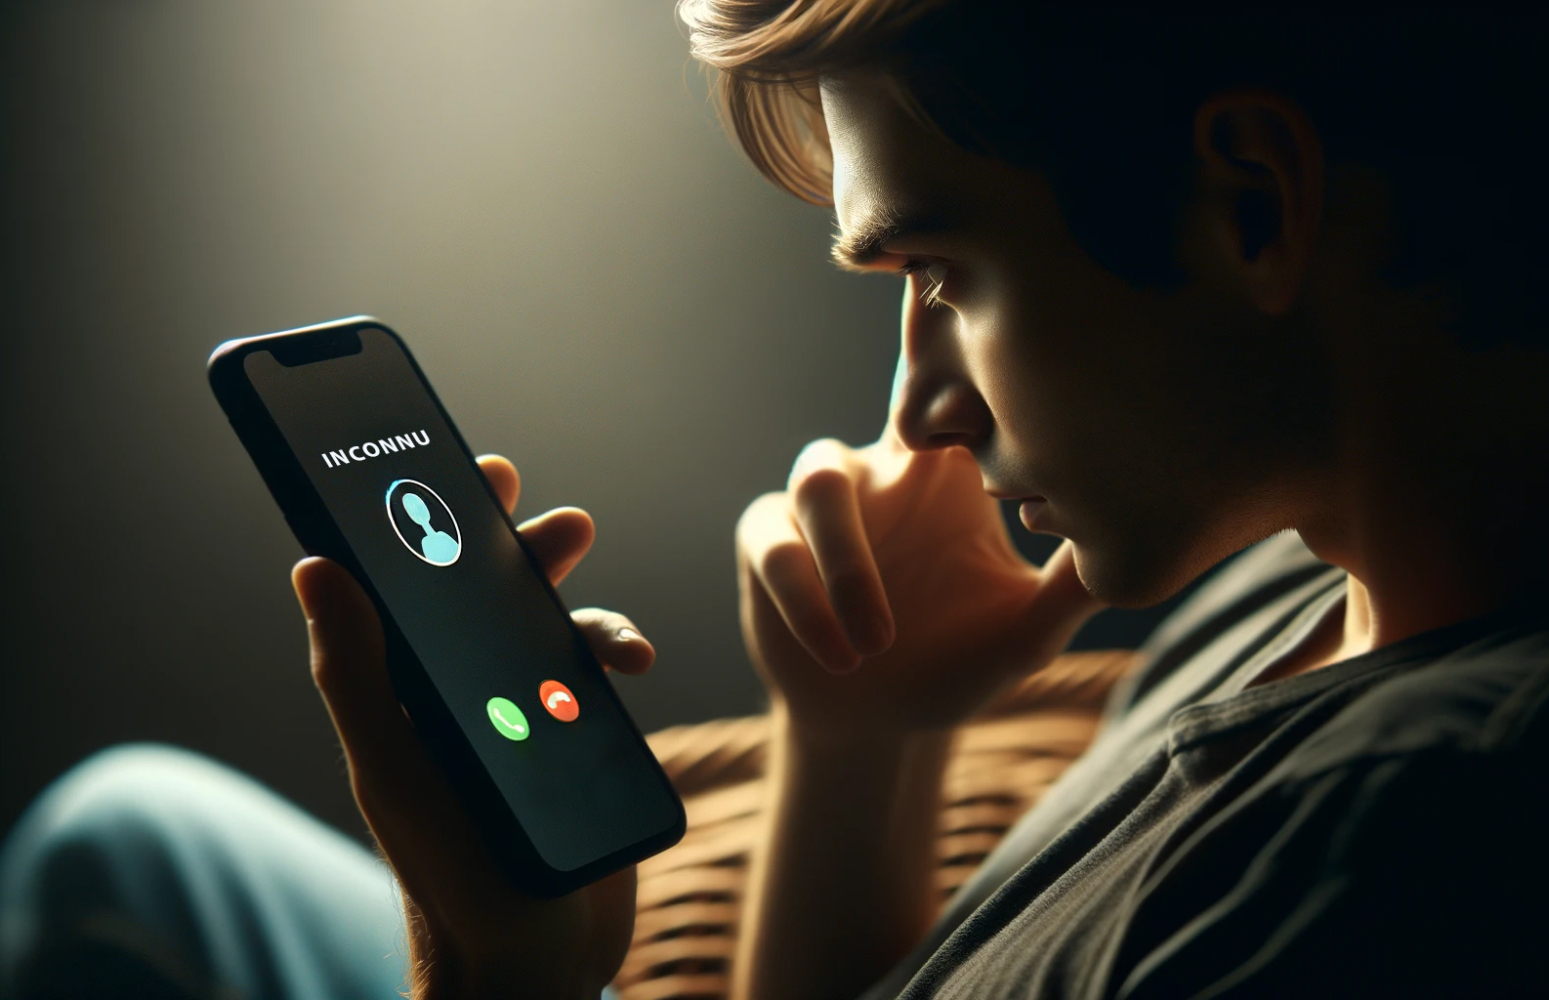 Un homme dans une pièce sombre regardant son téléphone portable avec un appel d'un numéro inconnu